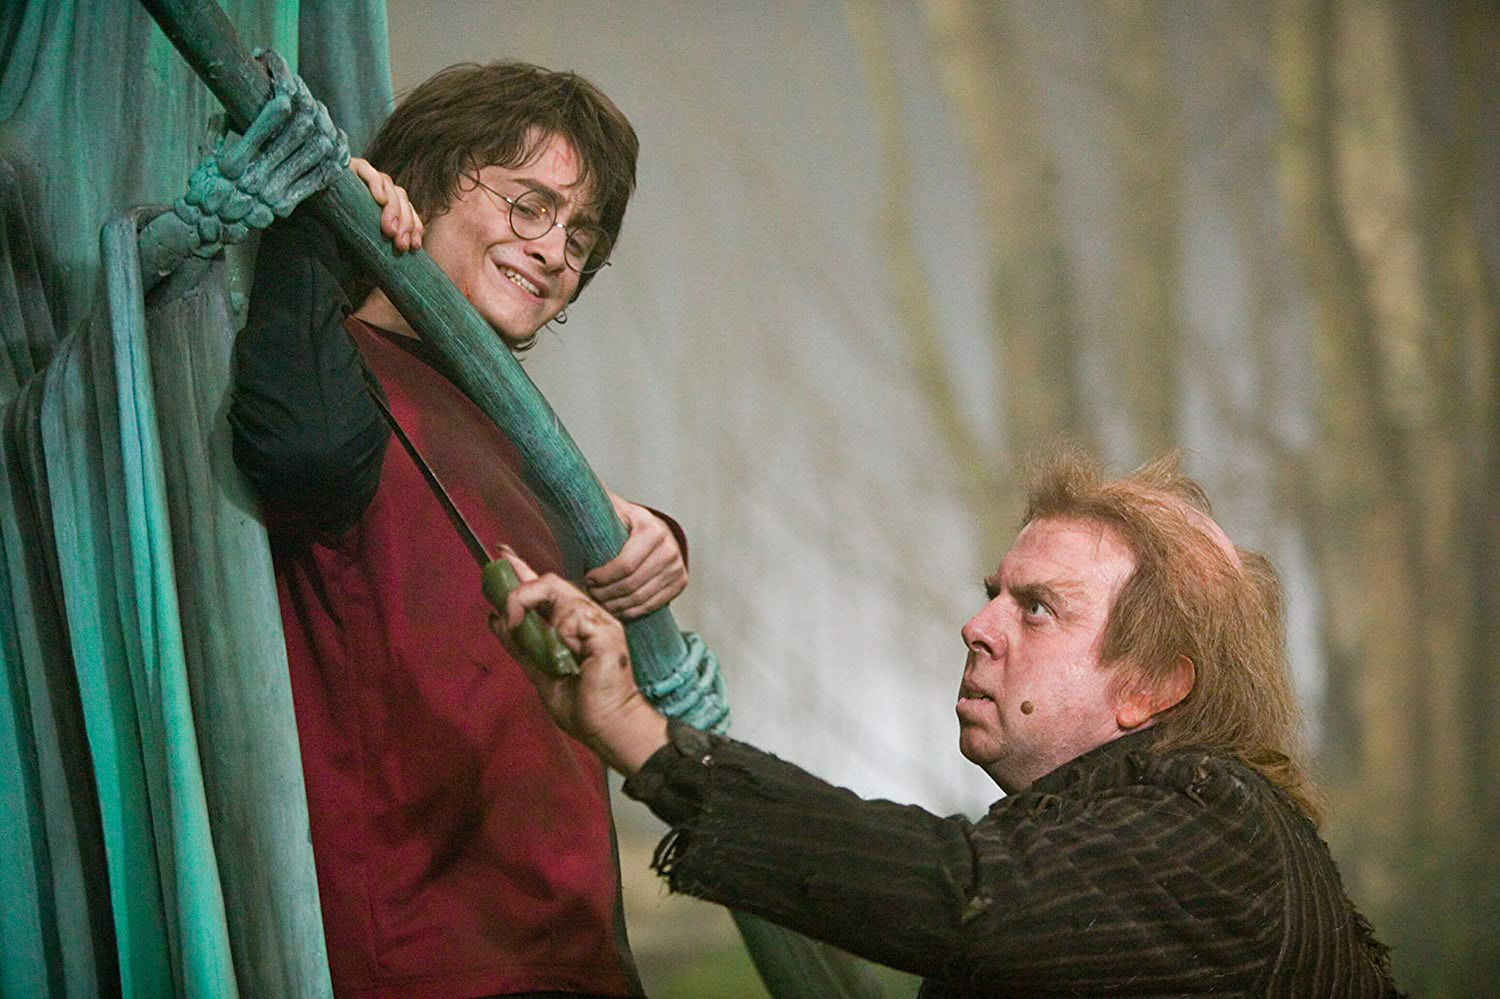 Pettigrew cuts Harry